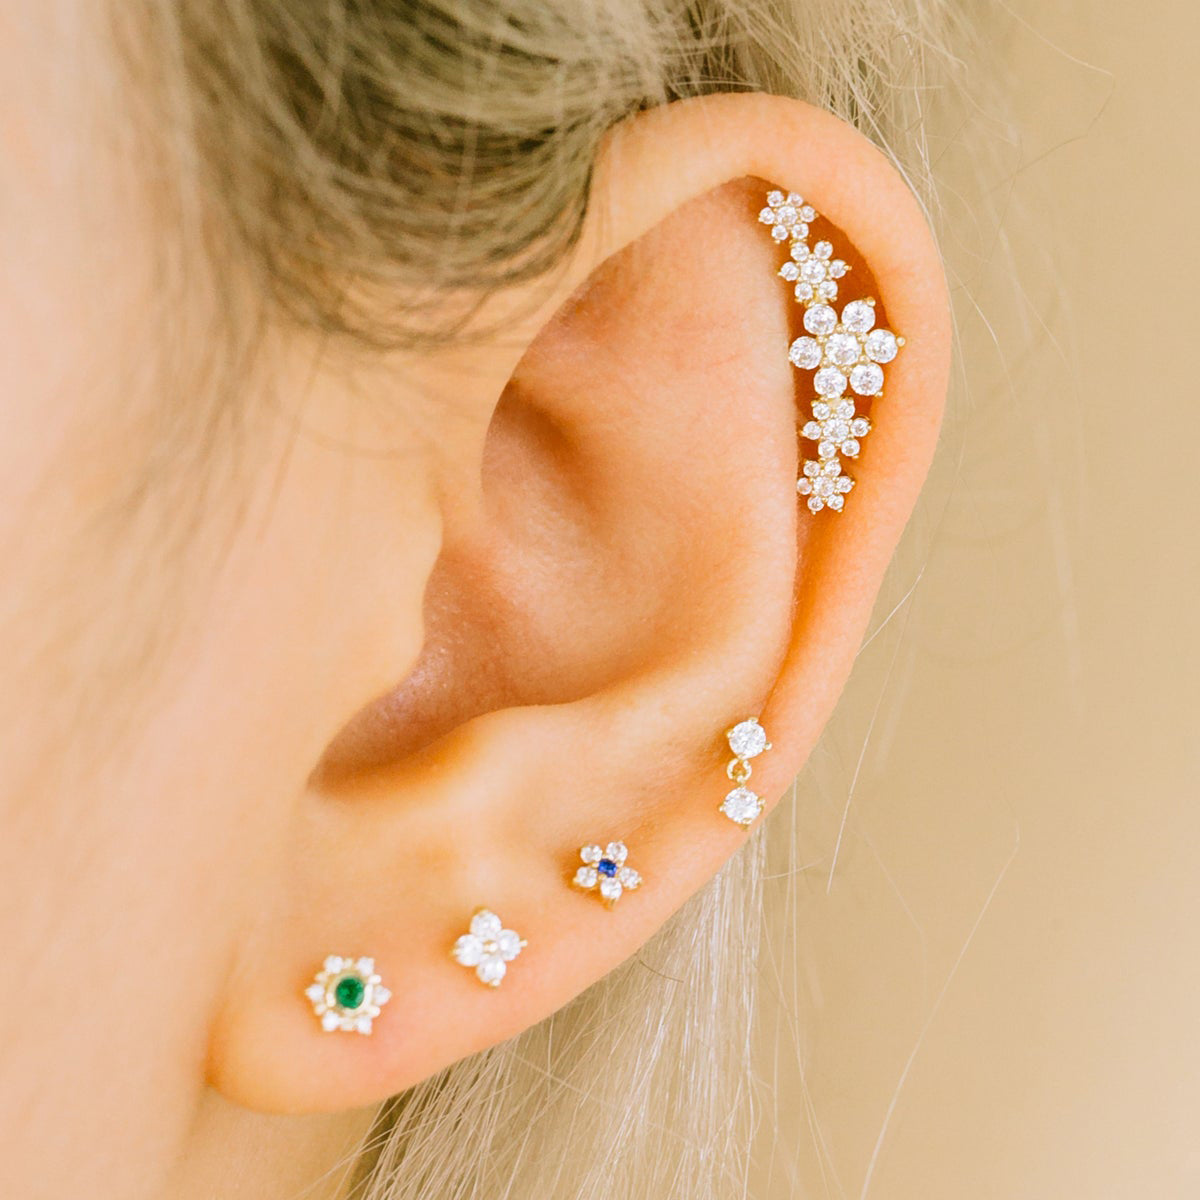 Flat Back Cartilage Earrings